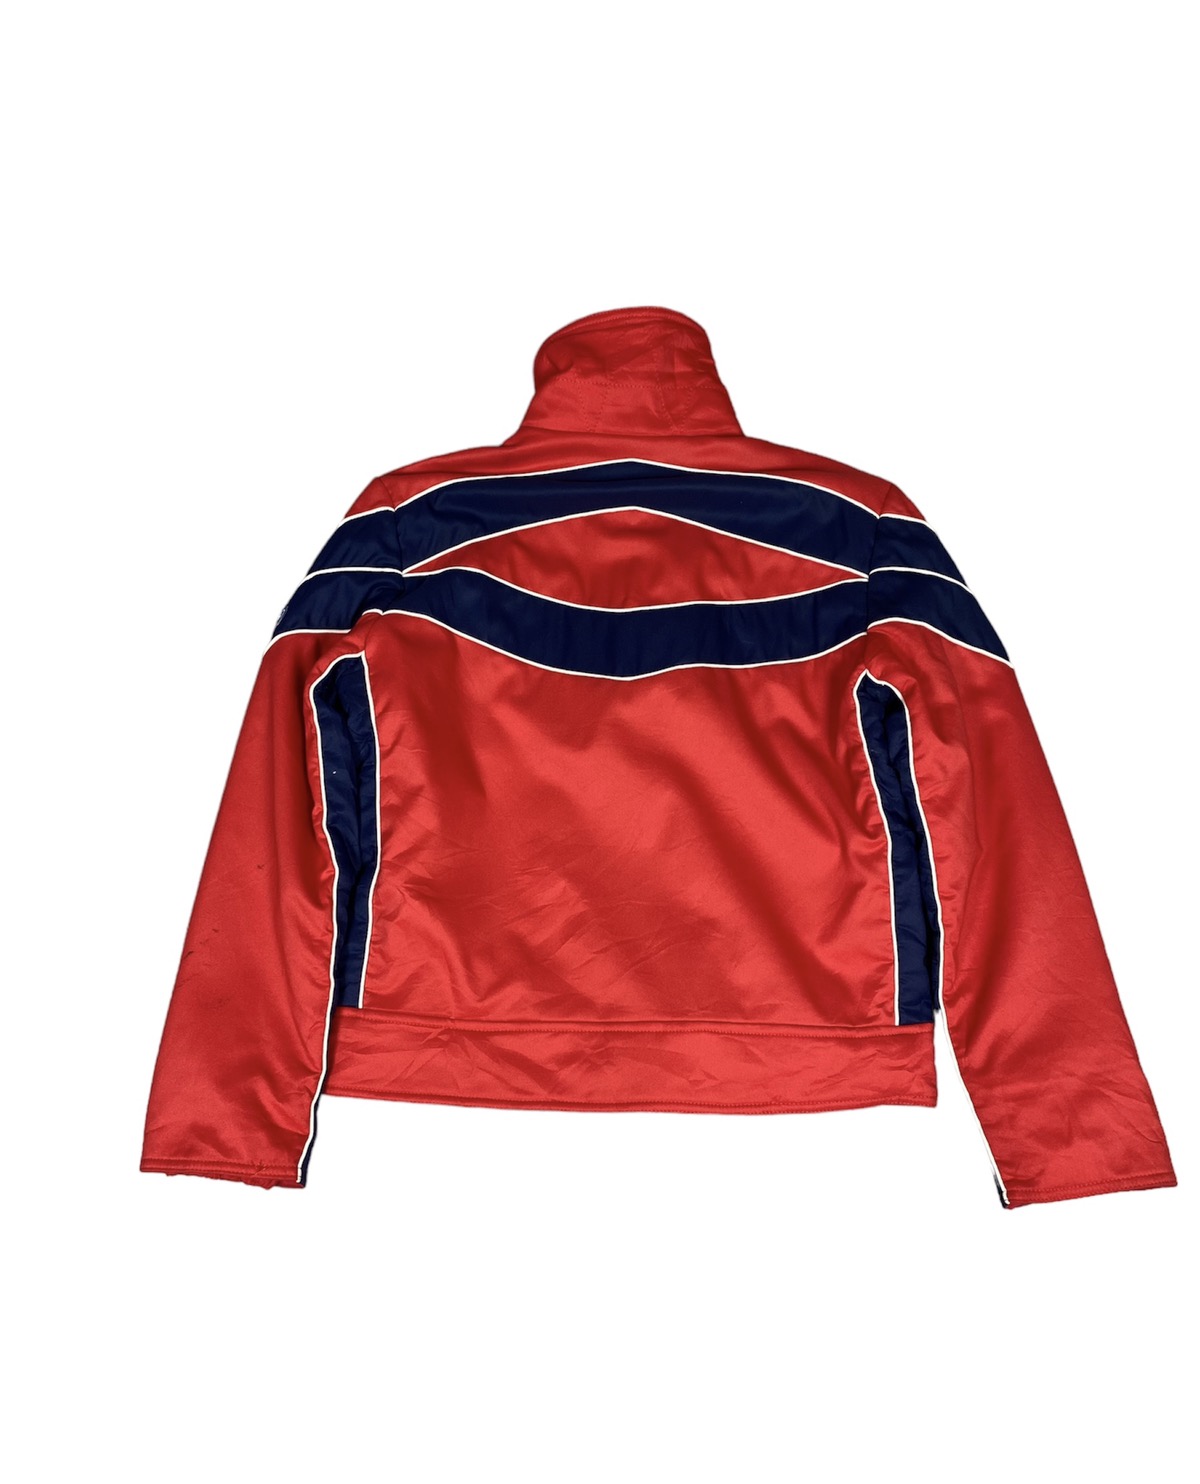 Vintage Moncler Jacket. J011 - 2